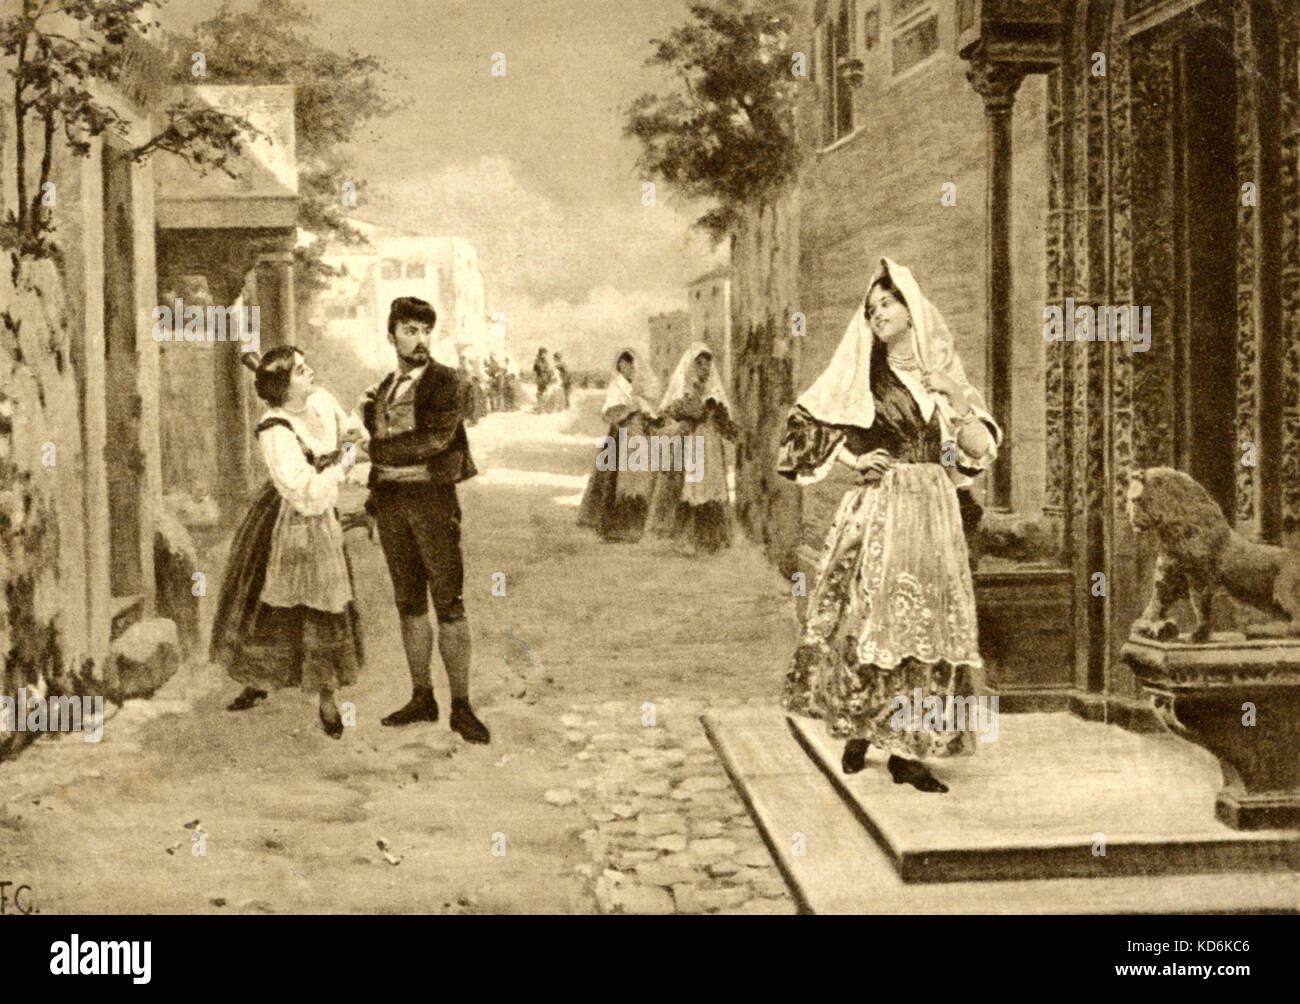 Szene aus der Oper "Cavalleria Rusticana von Mascagni Santuzza" ist verzweifelt, als sie ihren geliebten Turiddu ihr zugunsten von Lola verlassen hat. Italienischer Komponist (1863-1945). Stockfoto